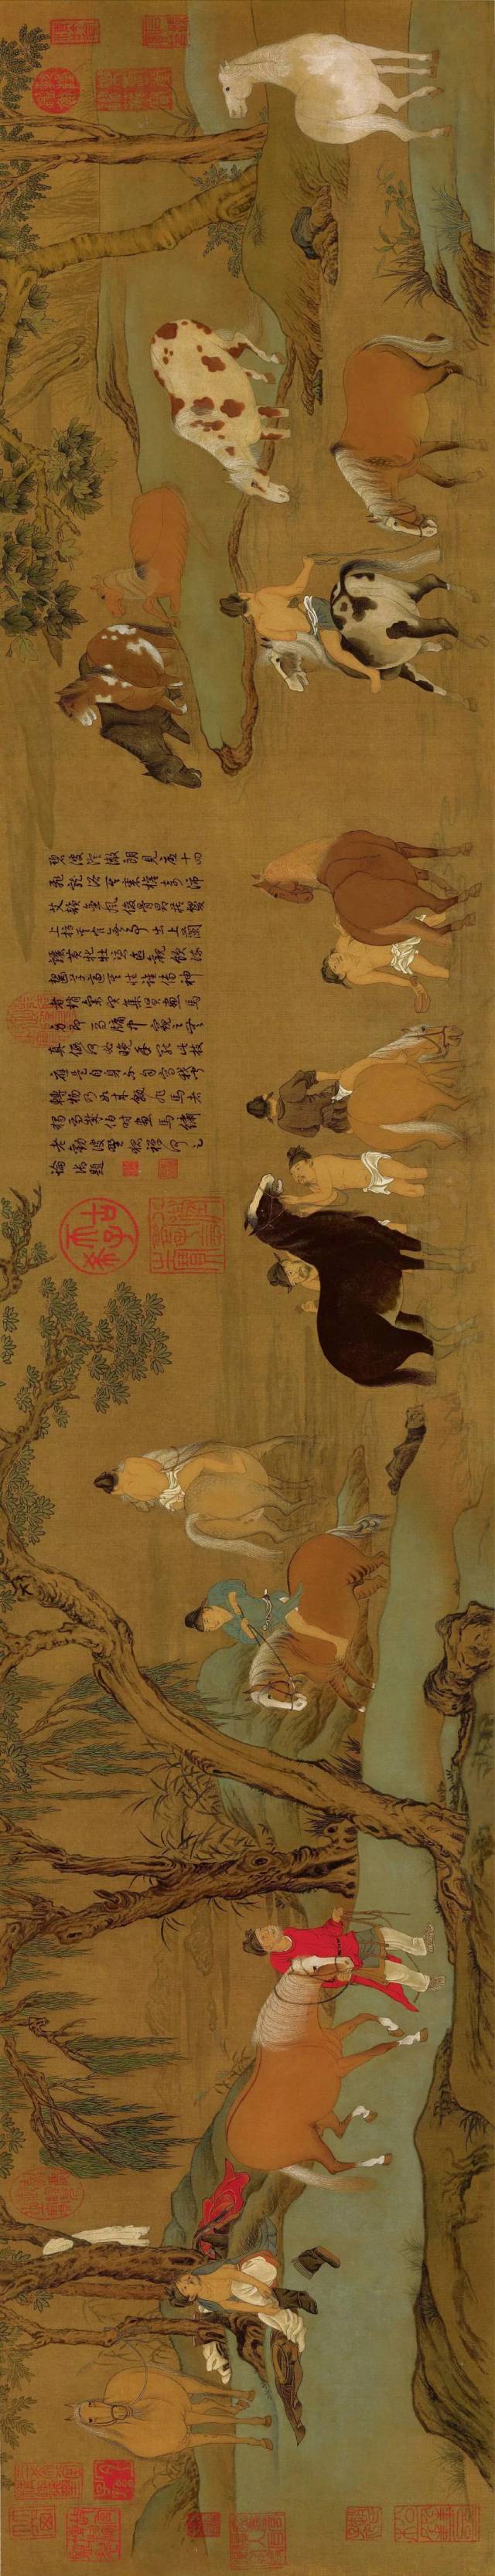 高清图,中国古代名画长卷,人物仕女动物高清国画欣赏建议收藏